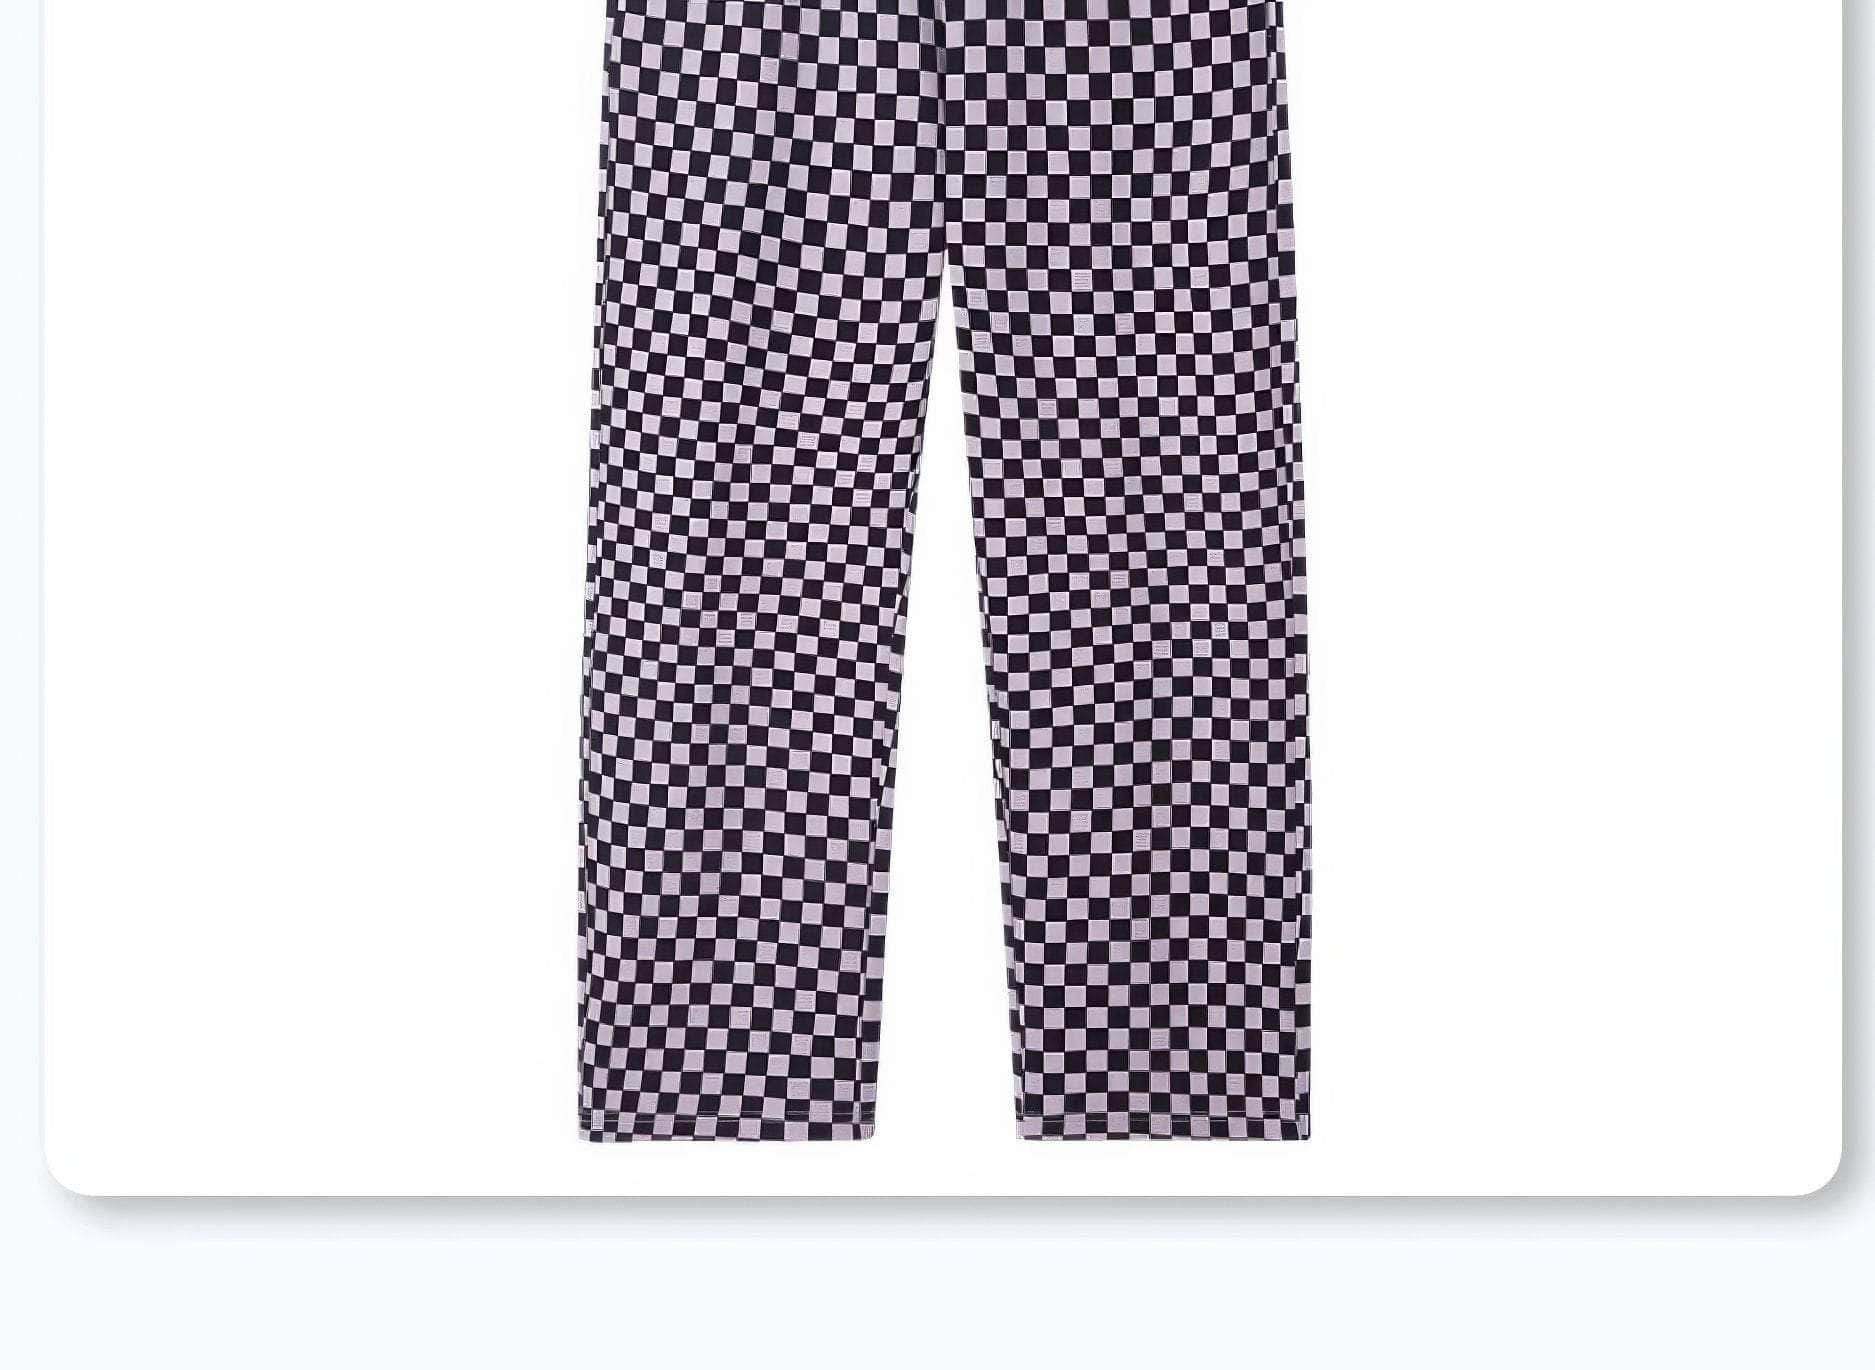 Two Piece Plaid Pants Sleepwear Pajamas Set